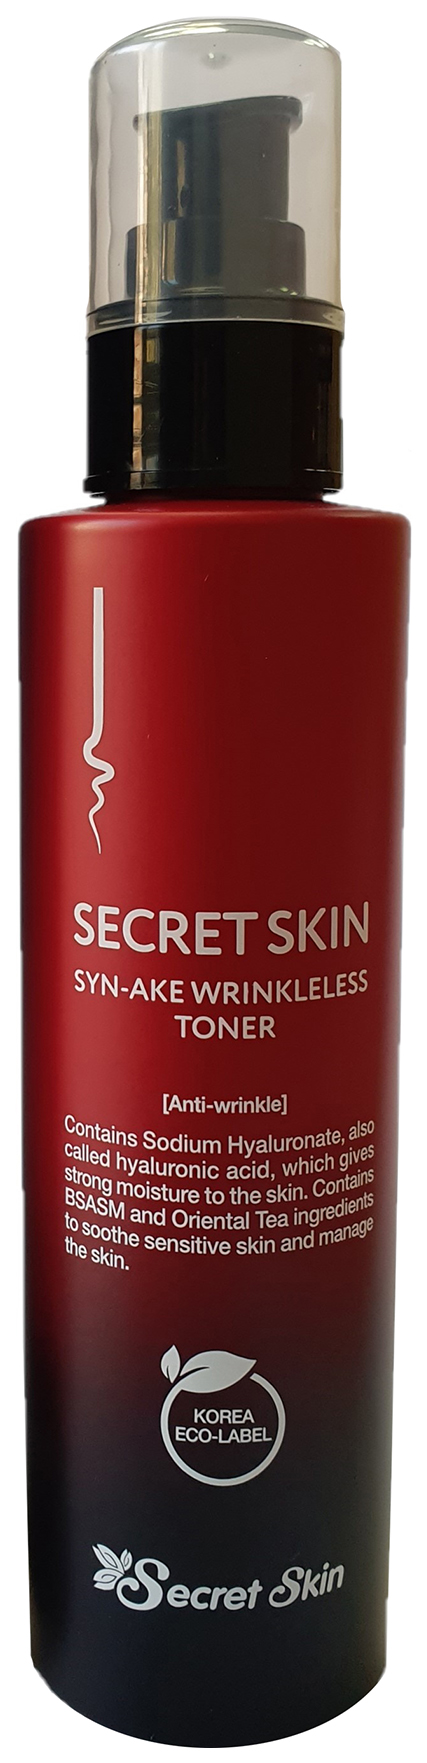 Тонер Secret Skin Syn-Ake Wrinkleless Toner с пептидами змеиного яда 150 мл дезодорант спрей женский cool breeze cb secret 200 мл